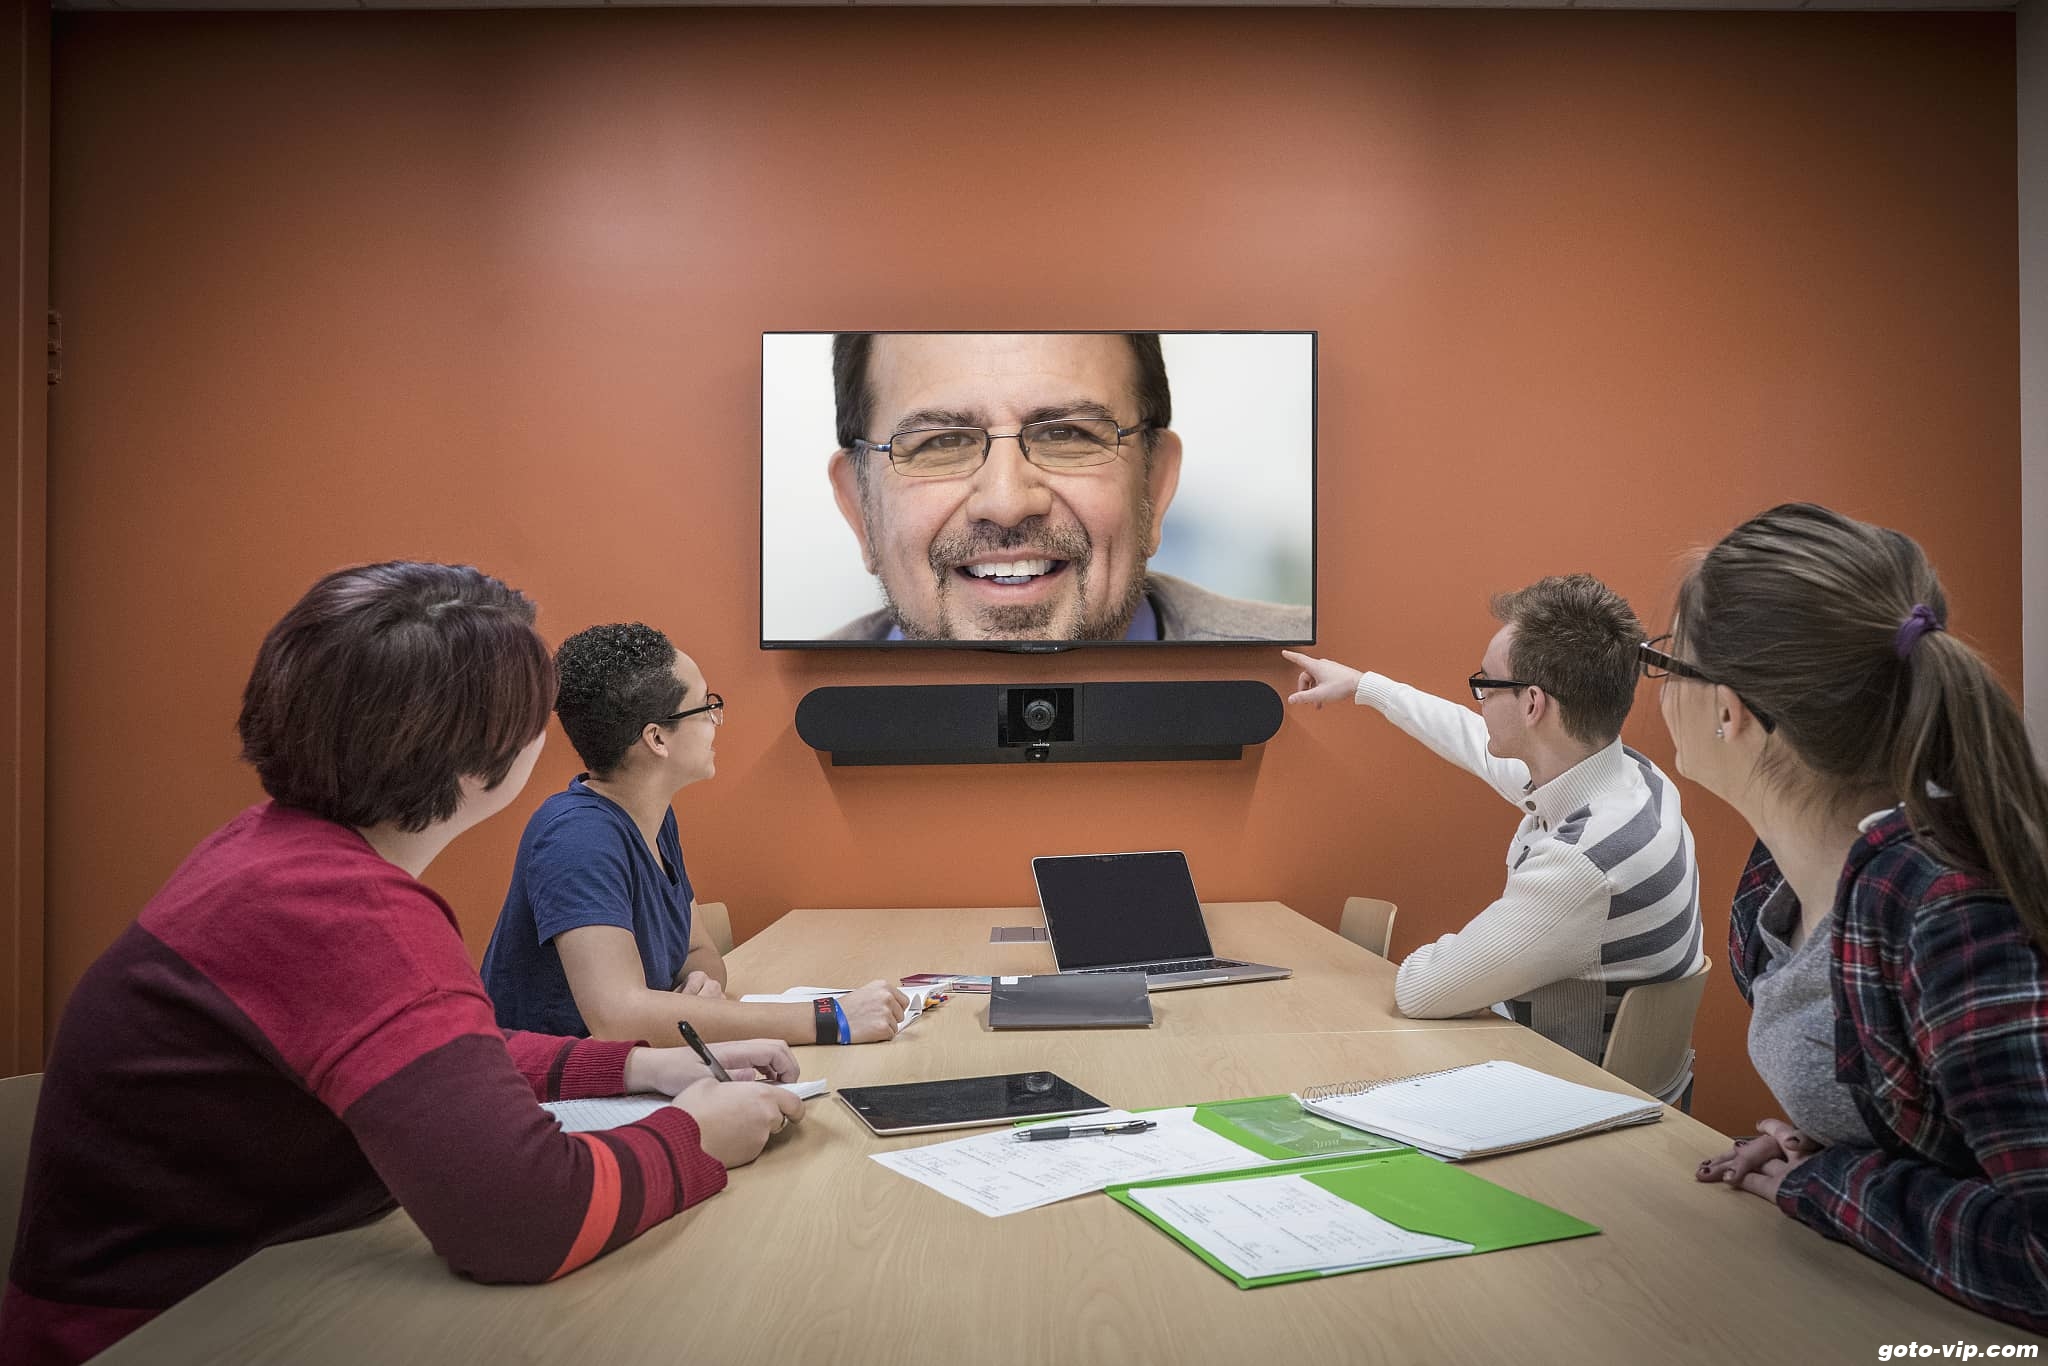 四人坐在会议室桌旁，正通过大屏幕视频通话，与远程的一位笑容可掬的男士交流。环境看起来正式且专业。